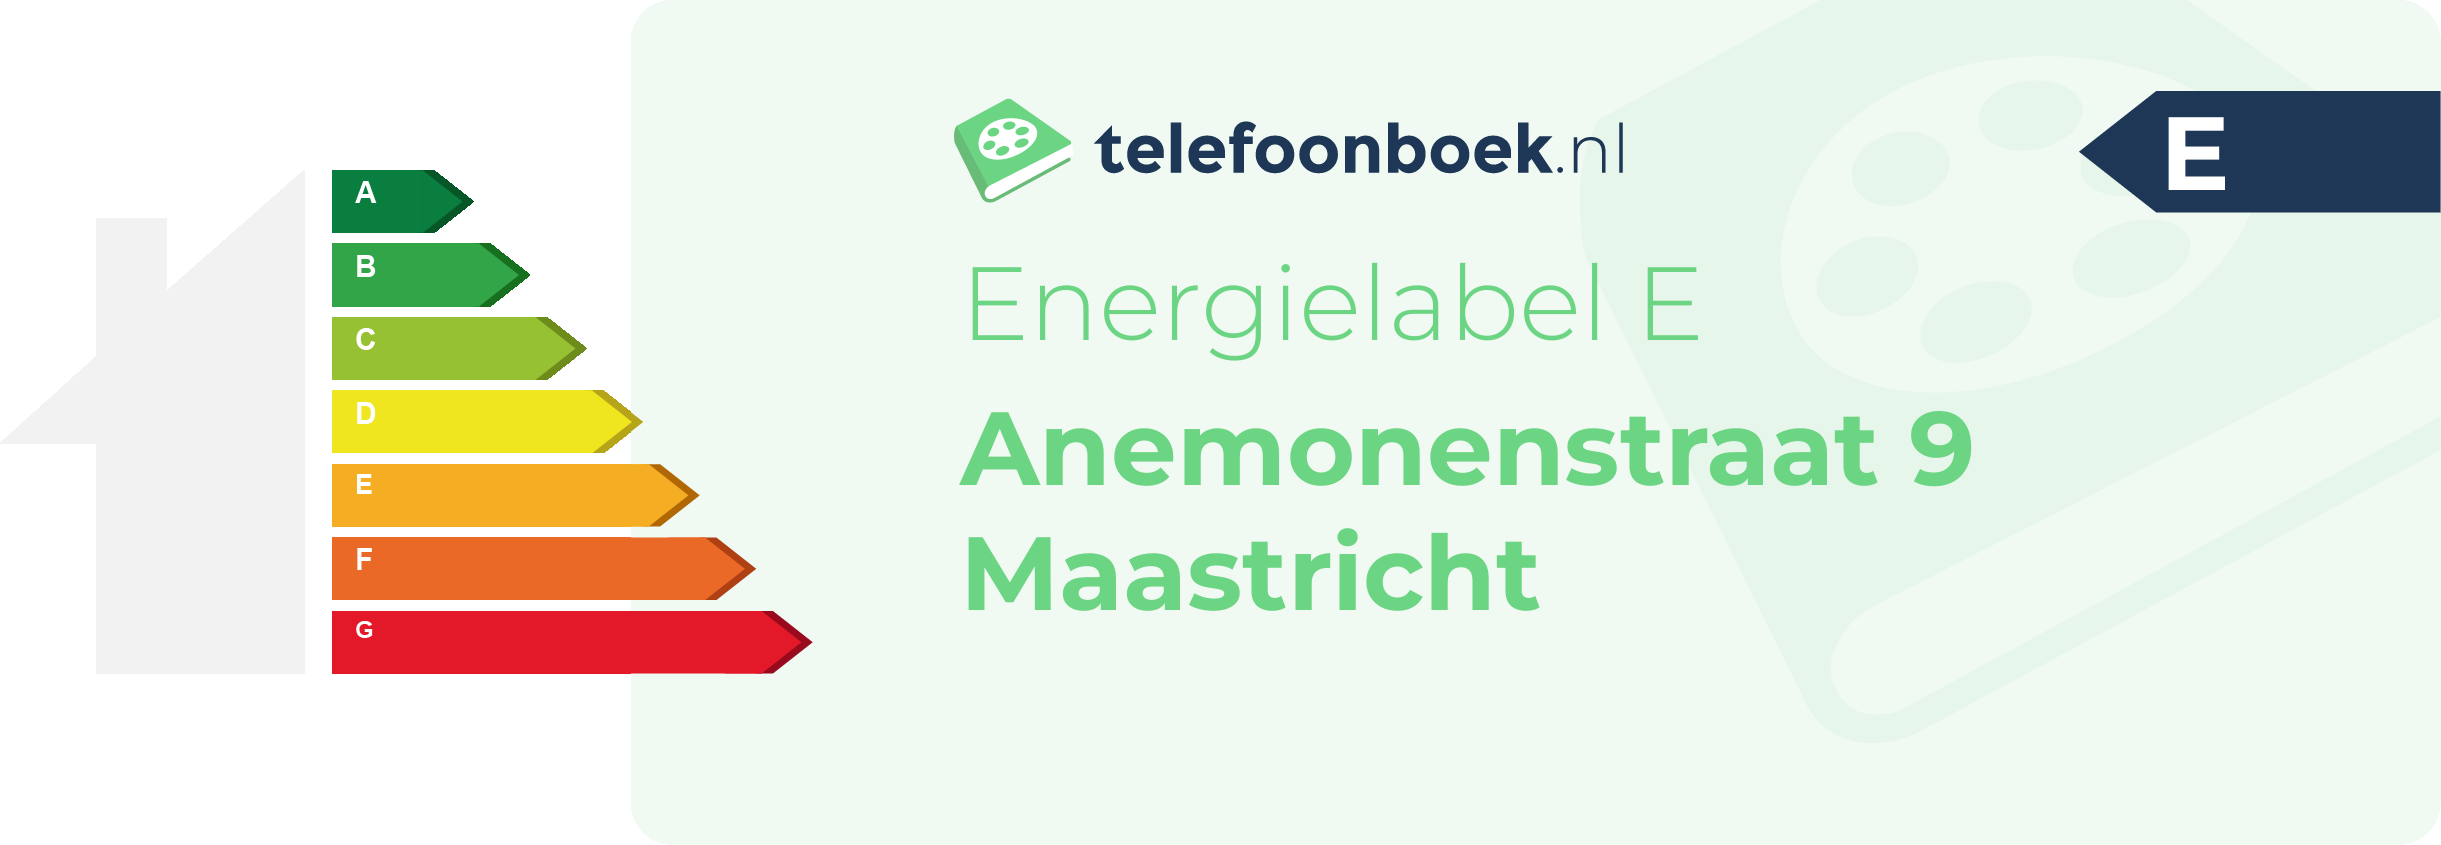 Energielabel Anemonenstraat 9 Maastricht